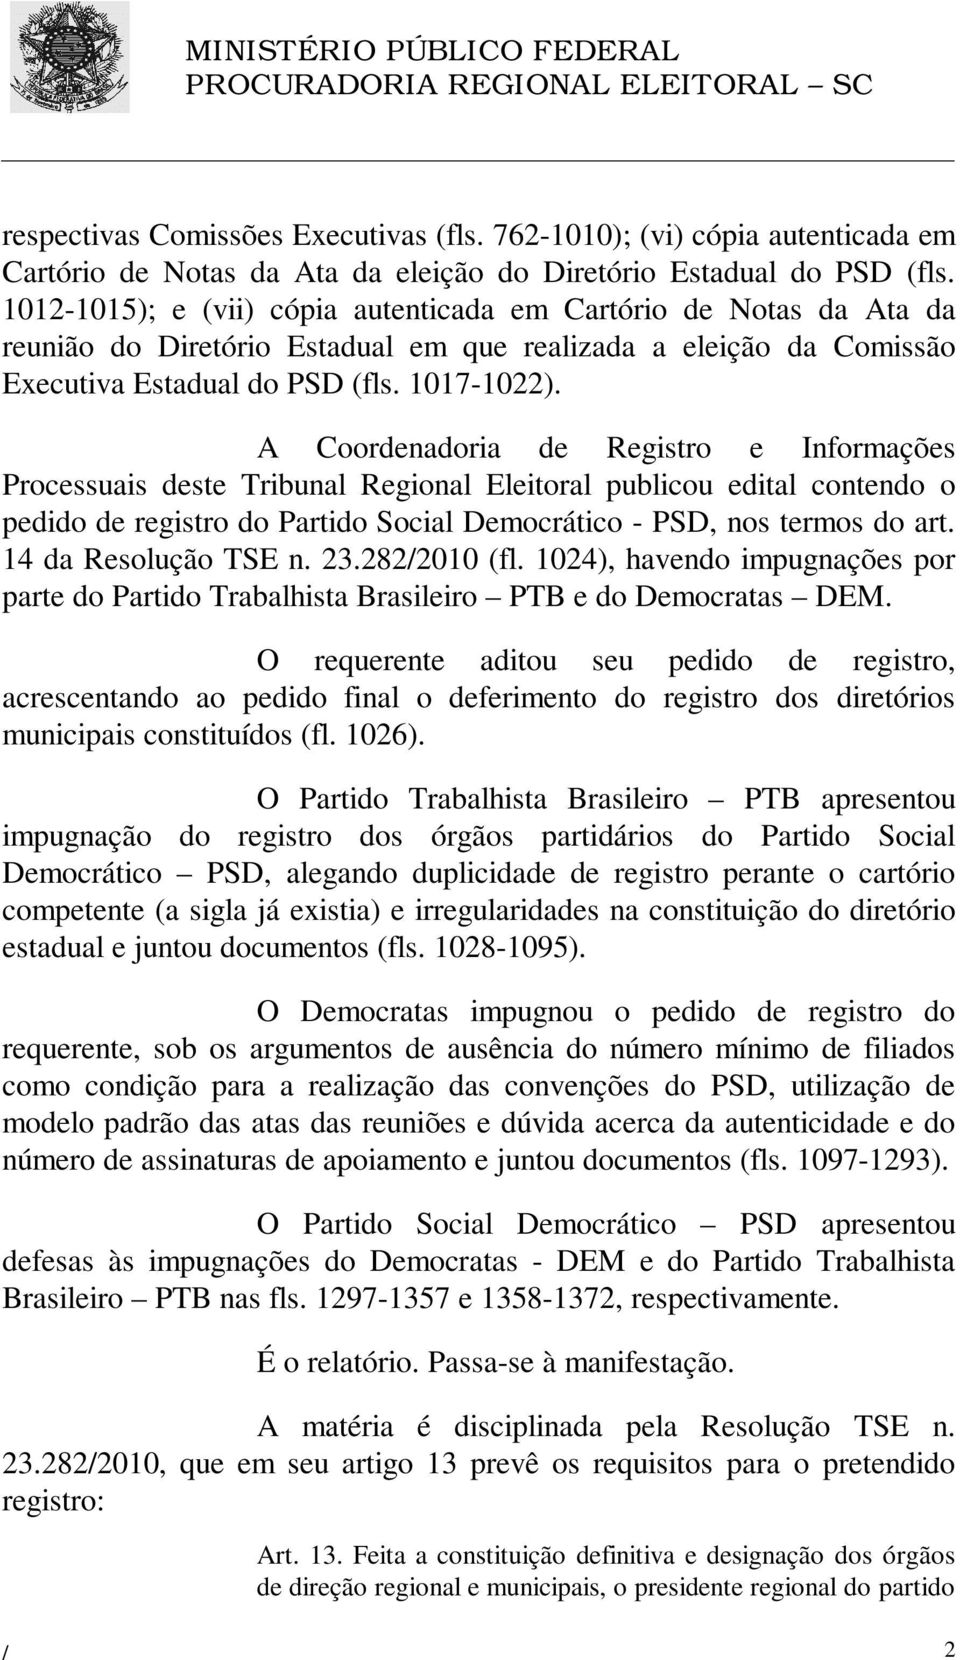 A Coordenadoria de Registro e Informações Processuais deste Tribunal Regional Eleitoral publicou edital contendo o pedido de registro do Partido Social Democrático - PSD, nos termos do art.